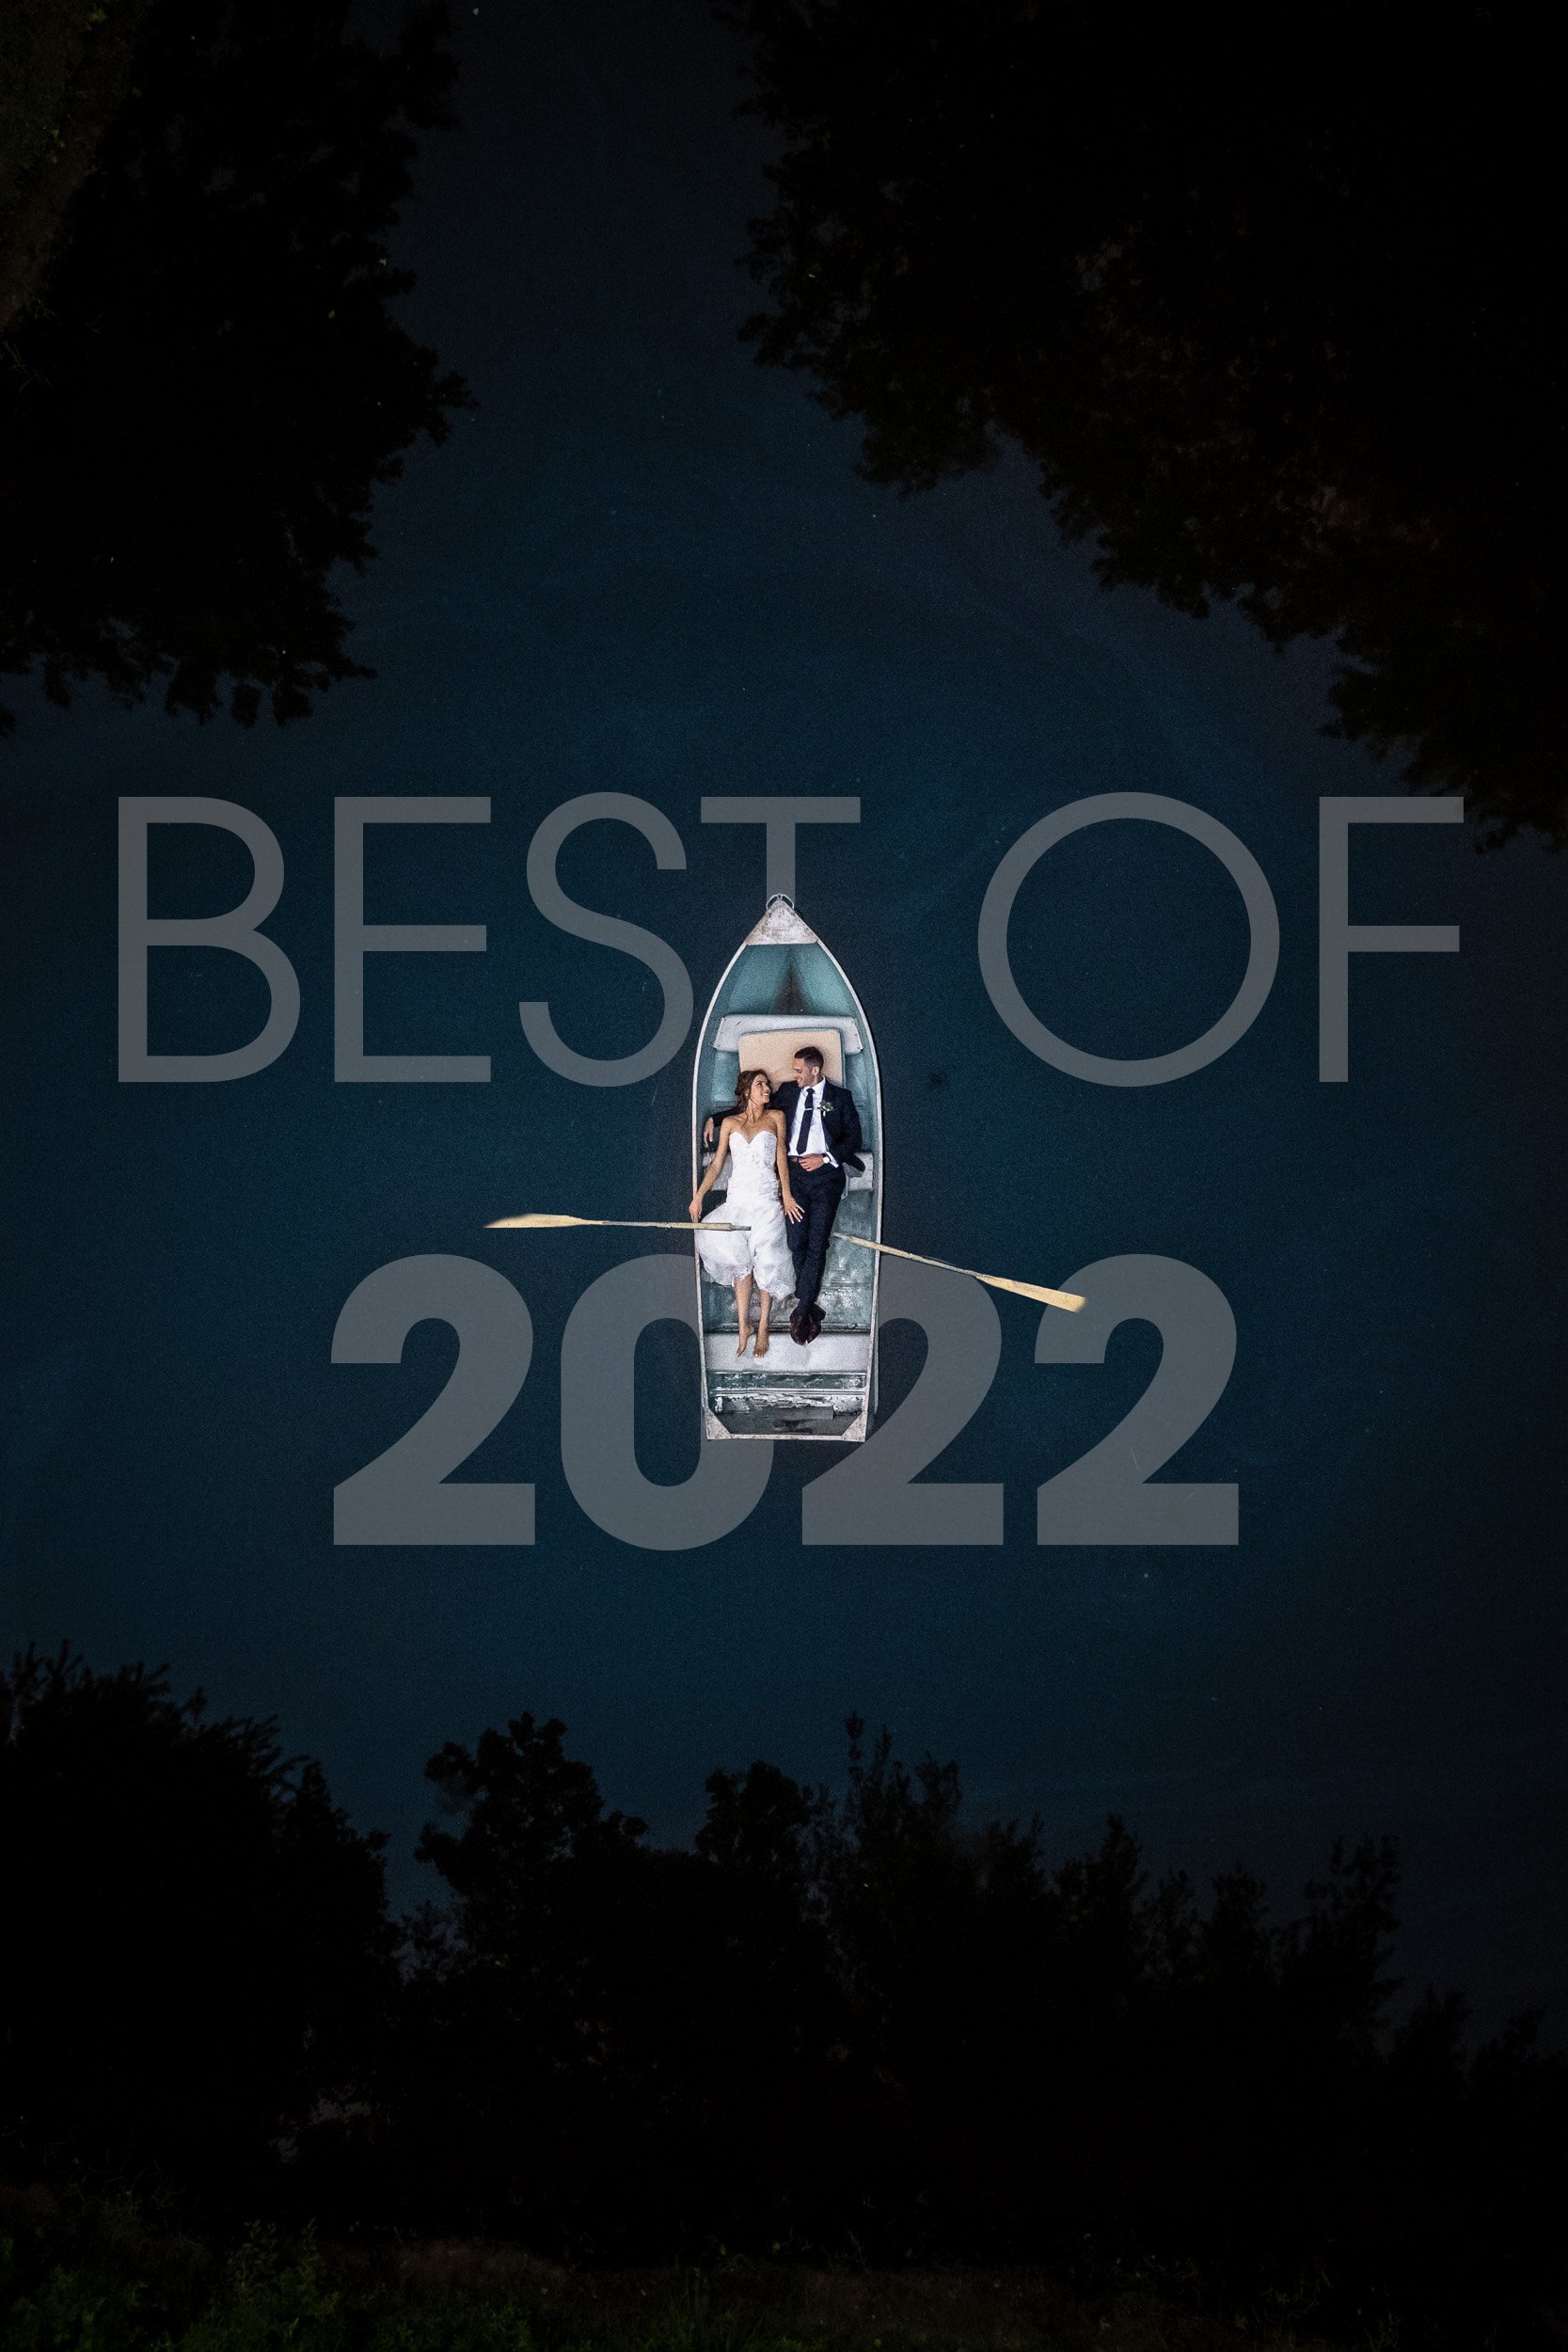 BEST OF 2022